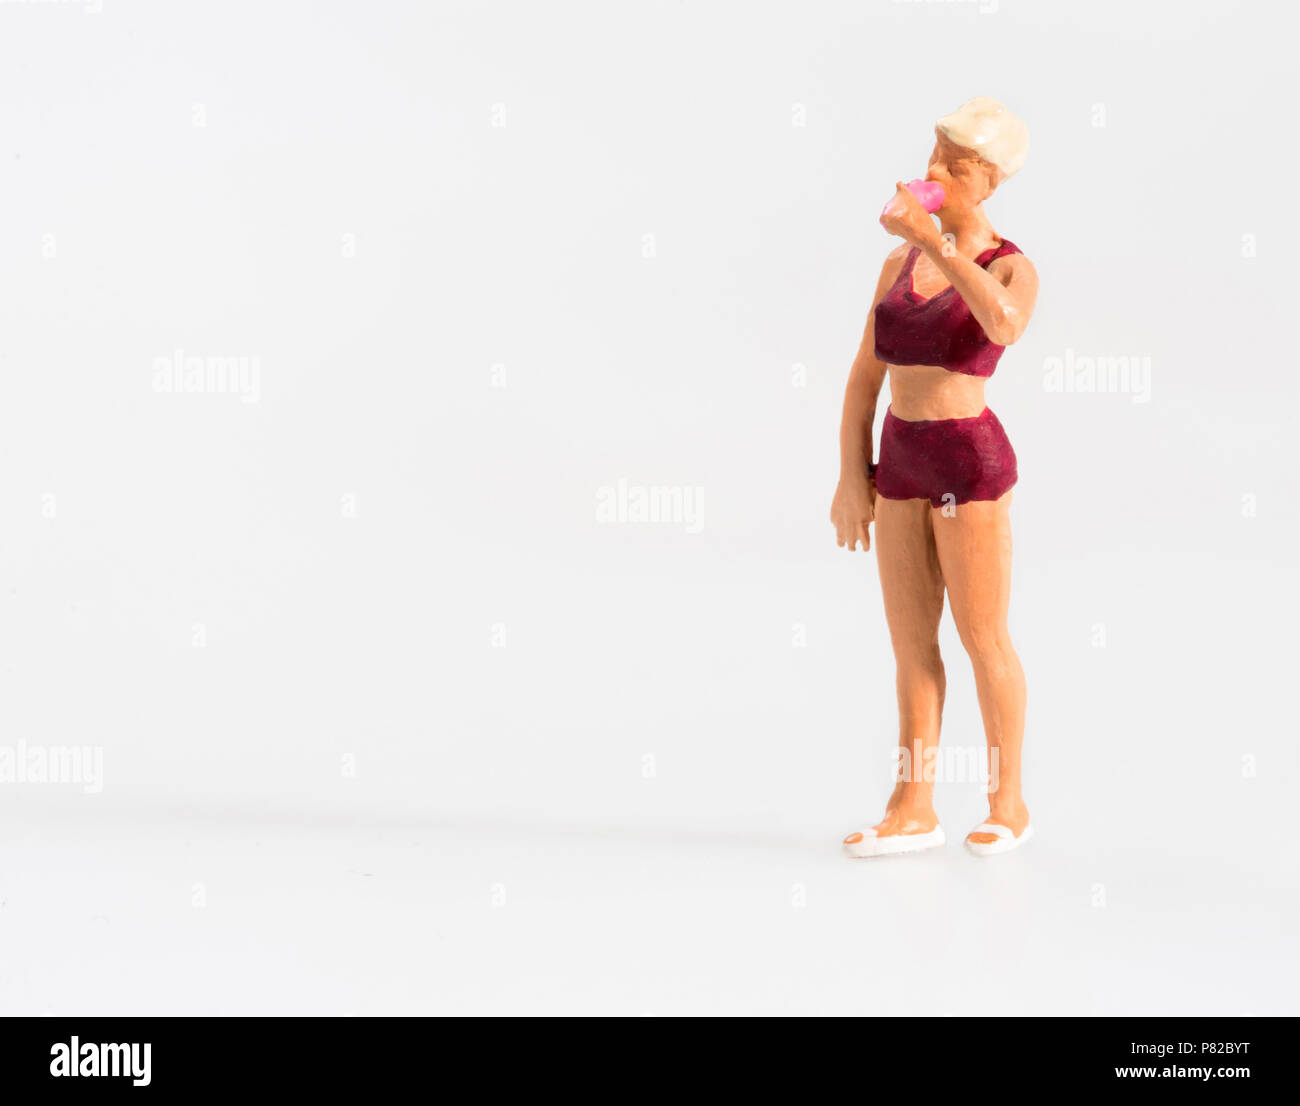 Bikini Girl Eating High Resolution Stock Photography and Images - Alamy